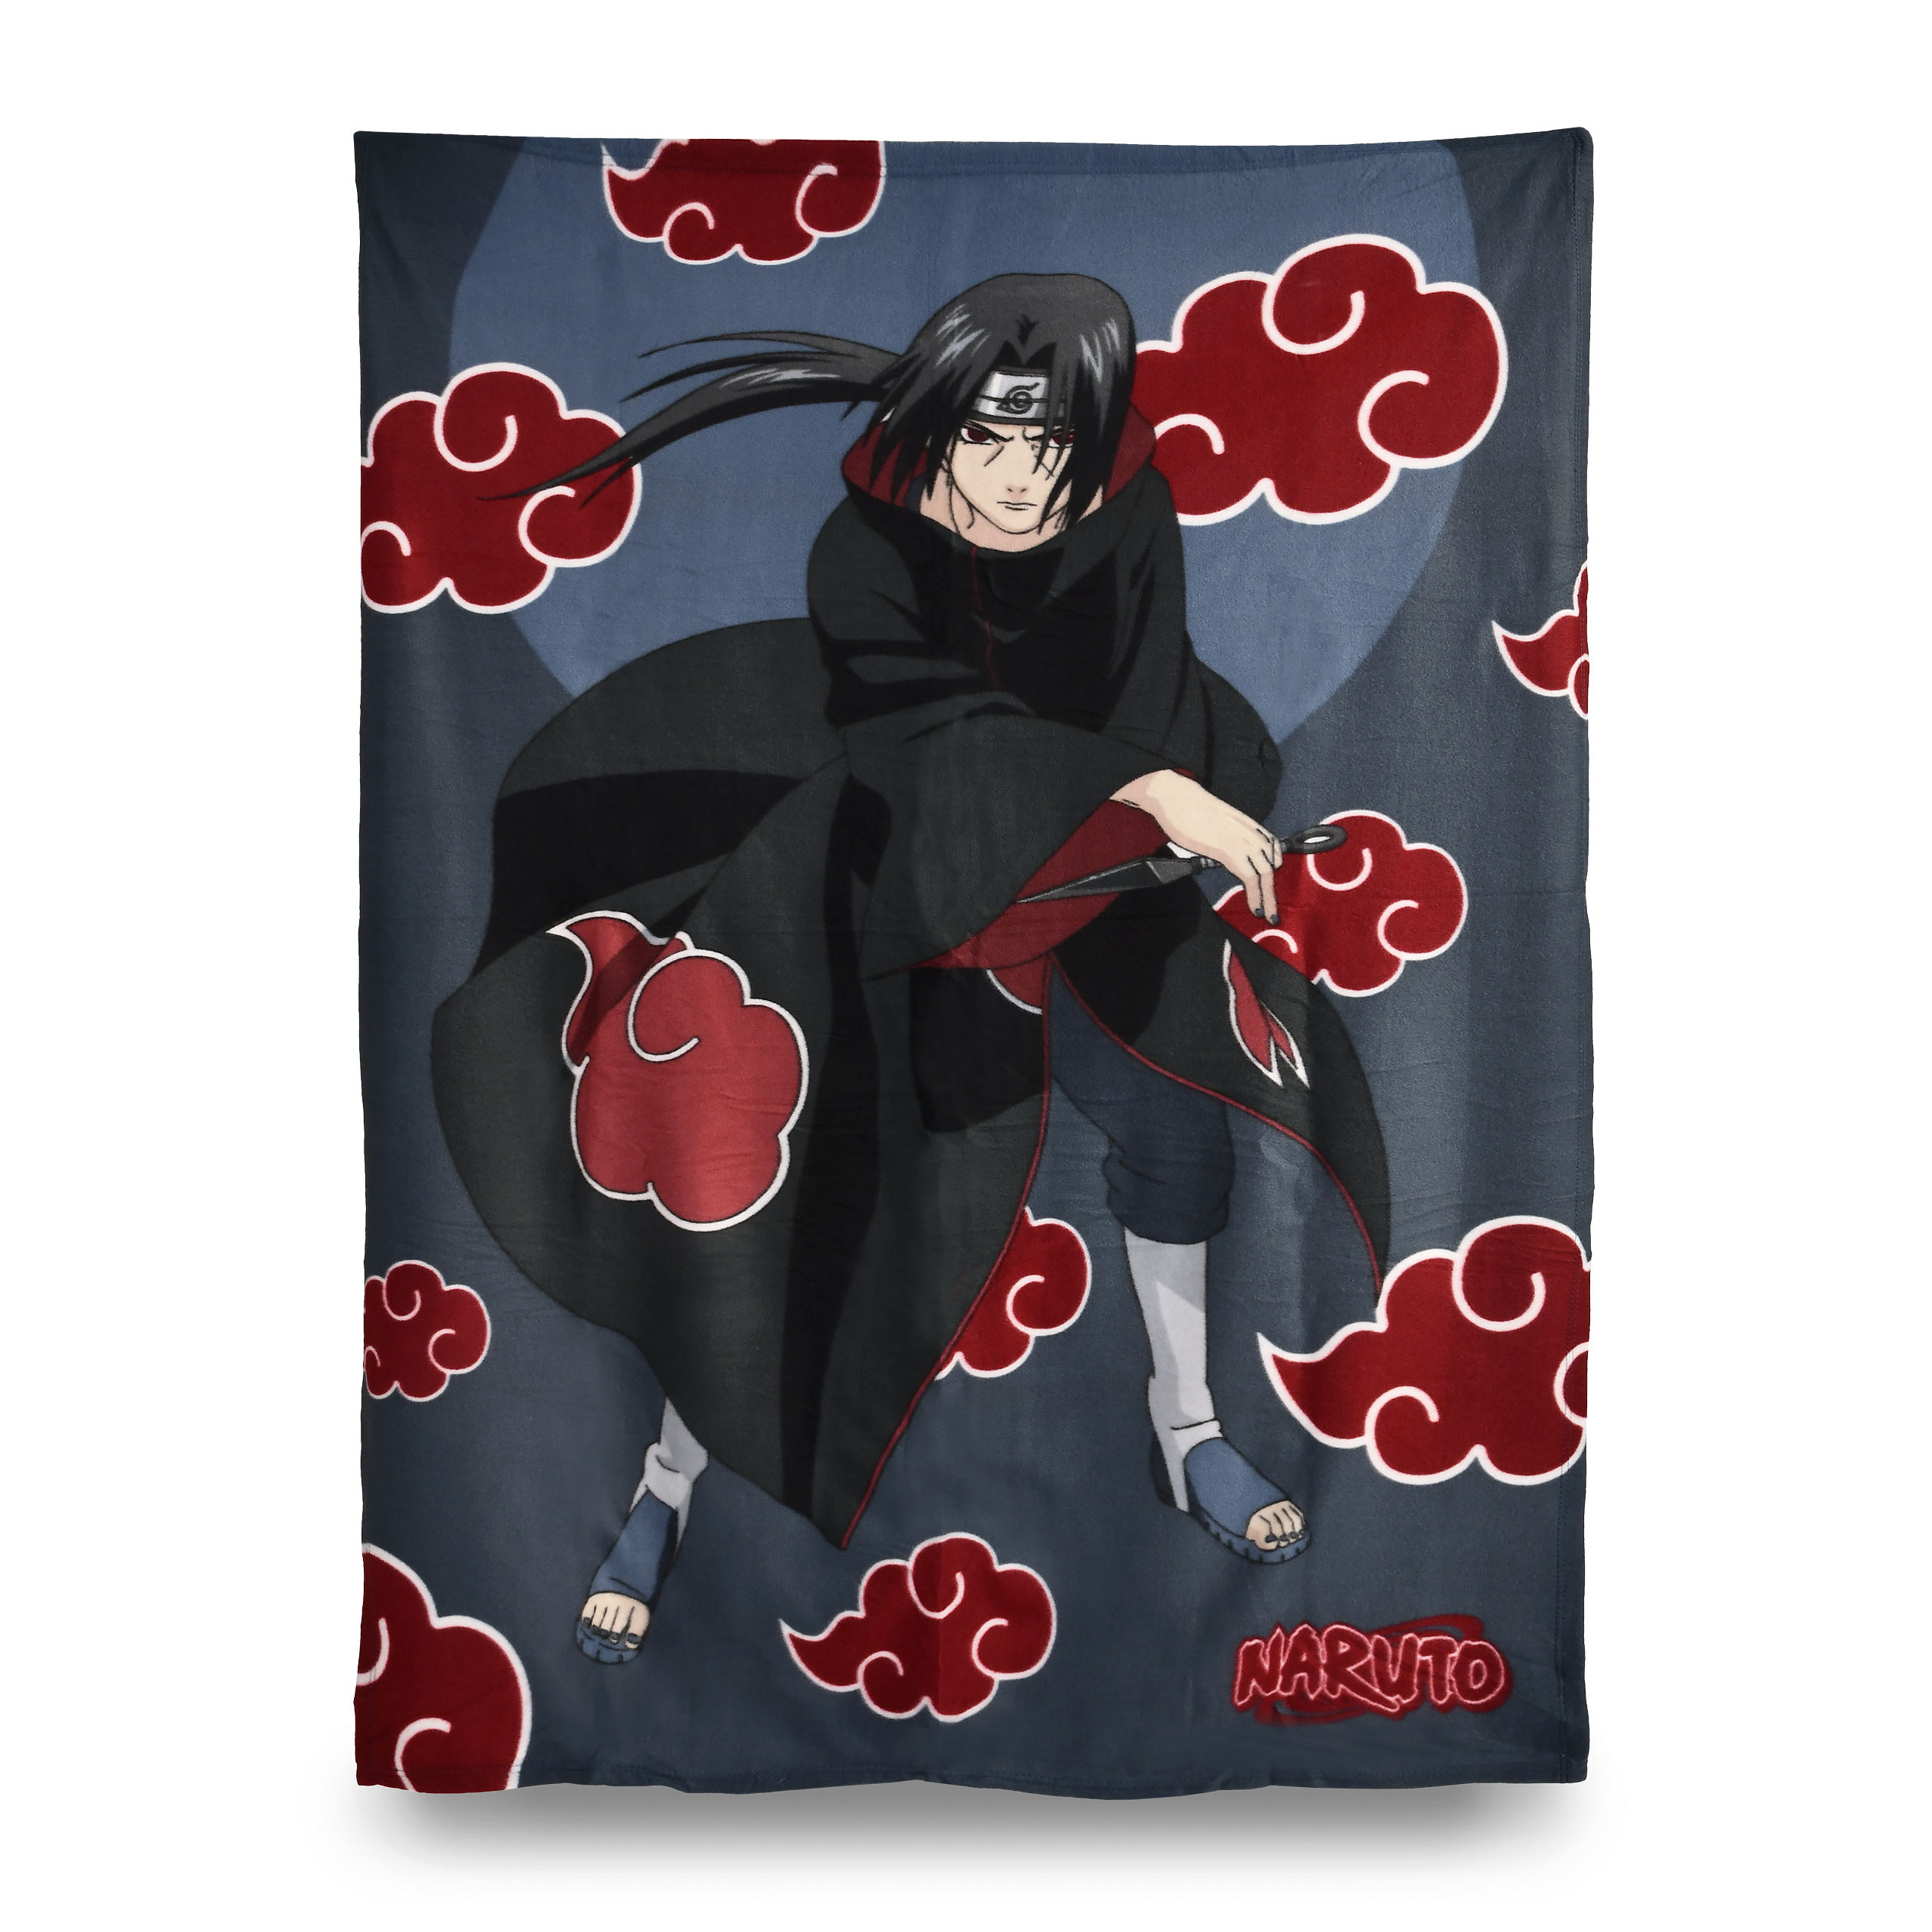 Naruto - Akatsuki blanket